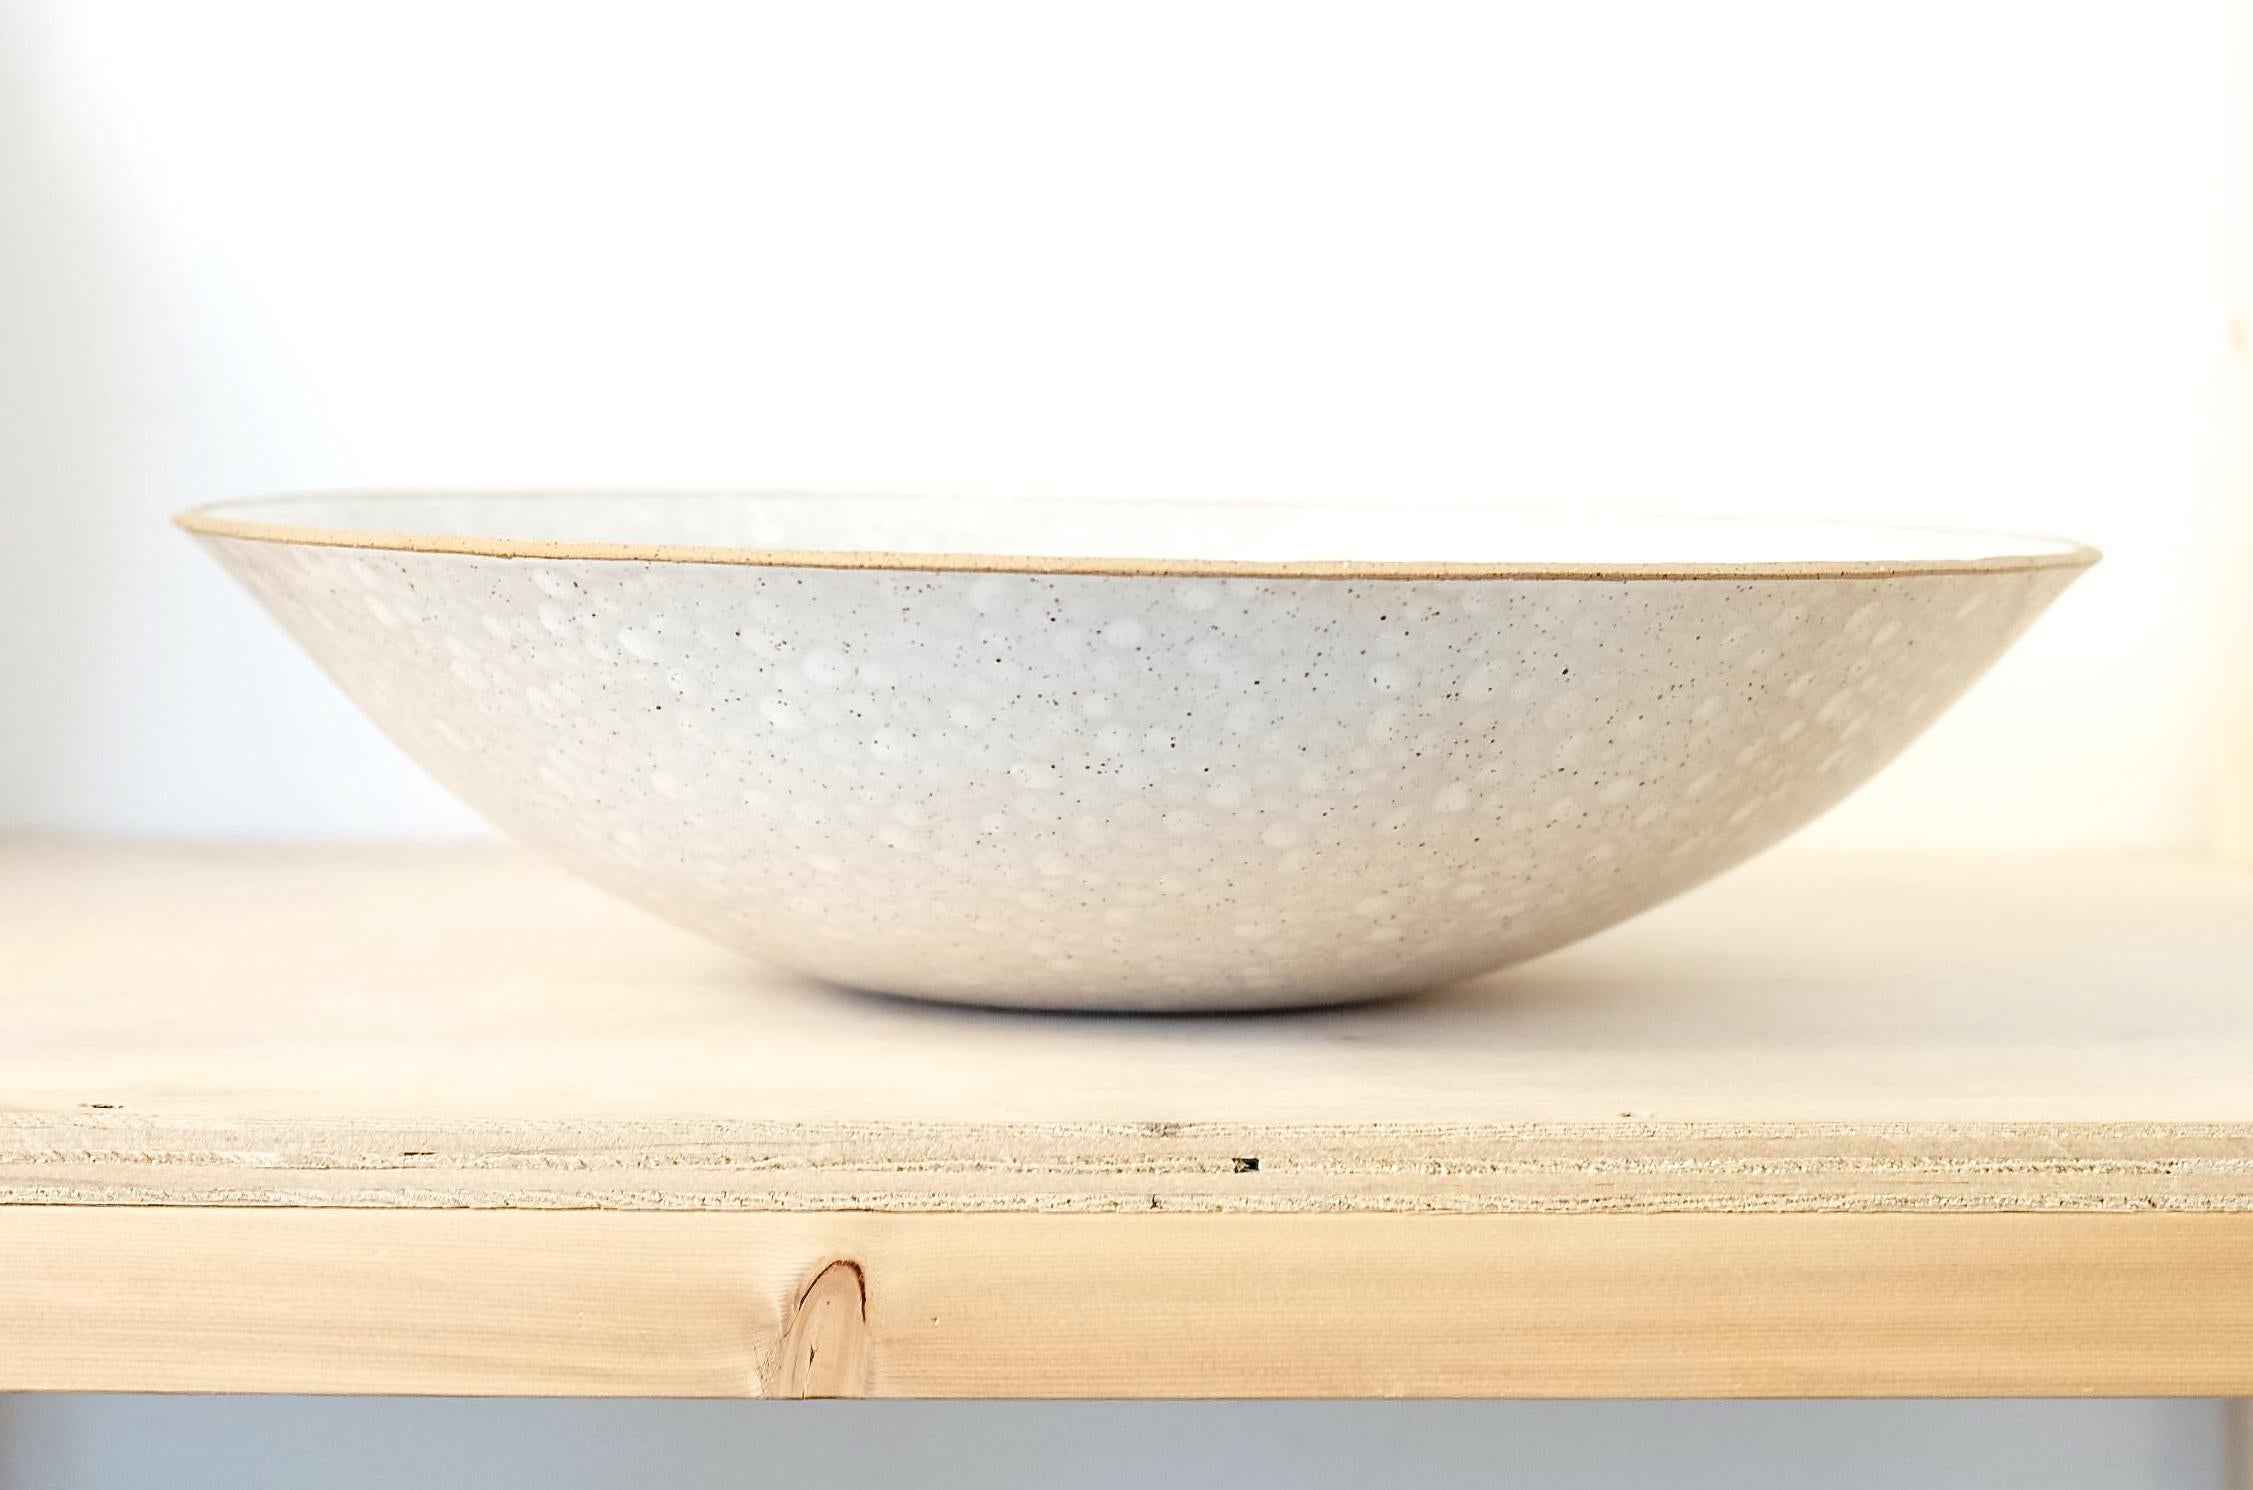 Contemporary Dots Ceramic Bowl by Lana Kova, Various Glazes Available